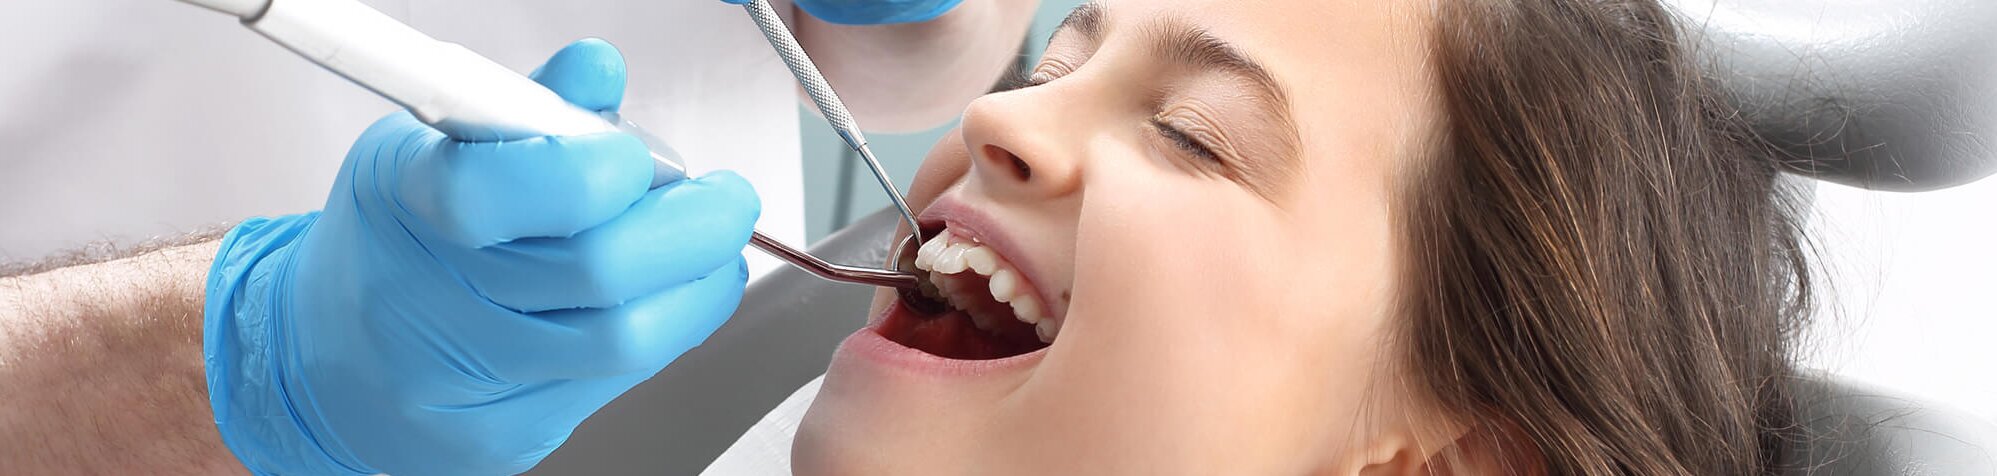 Лечение кариеса методом серебрения (1 зуб)